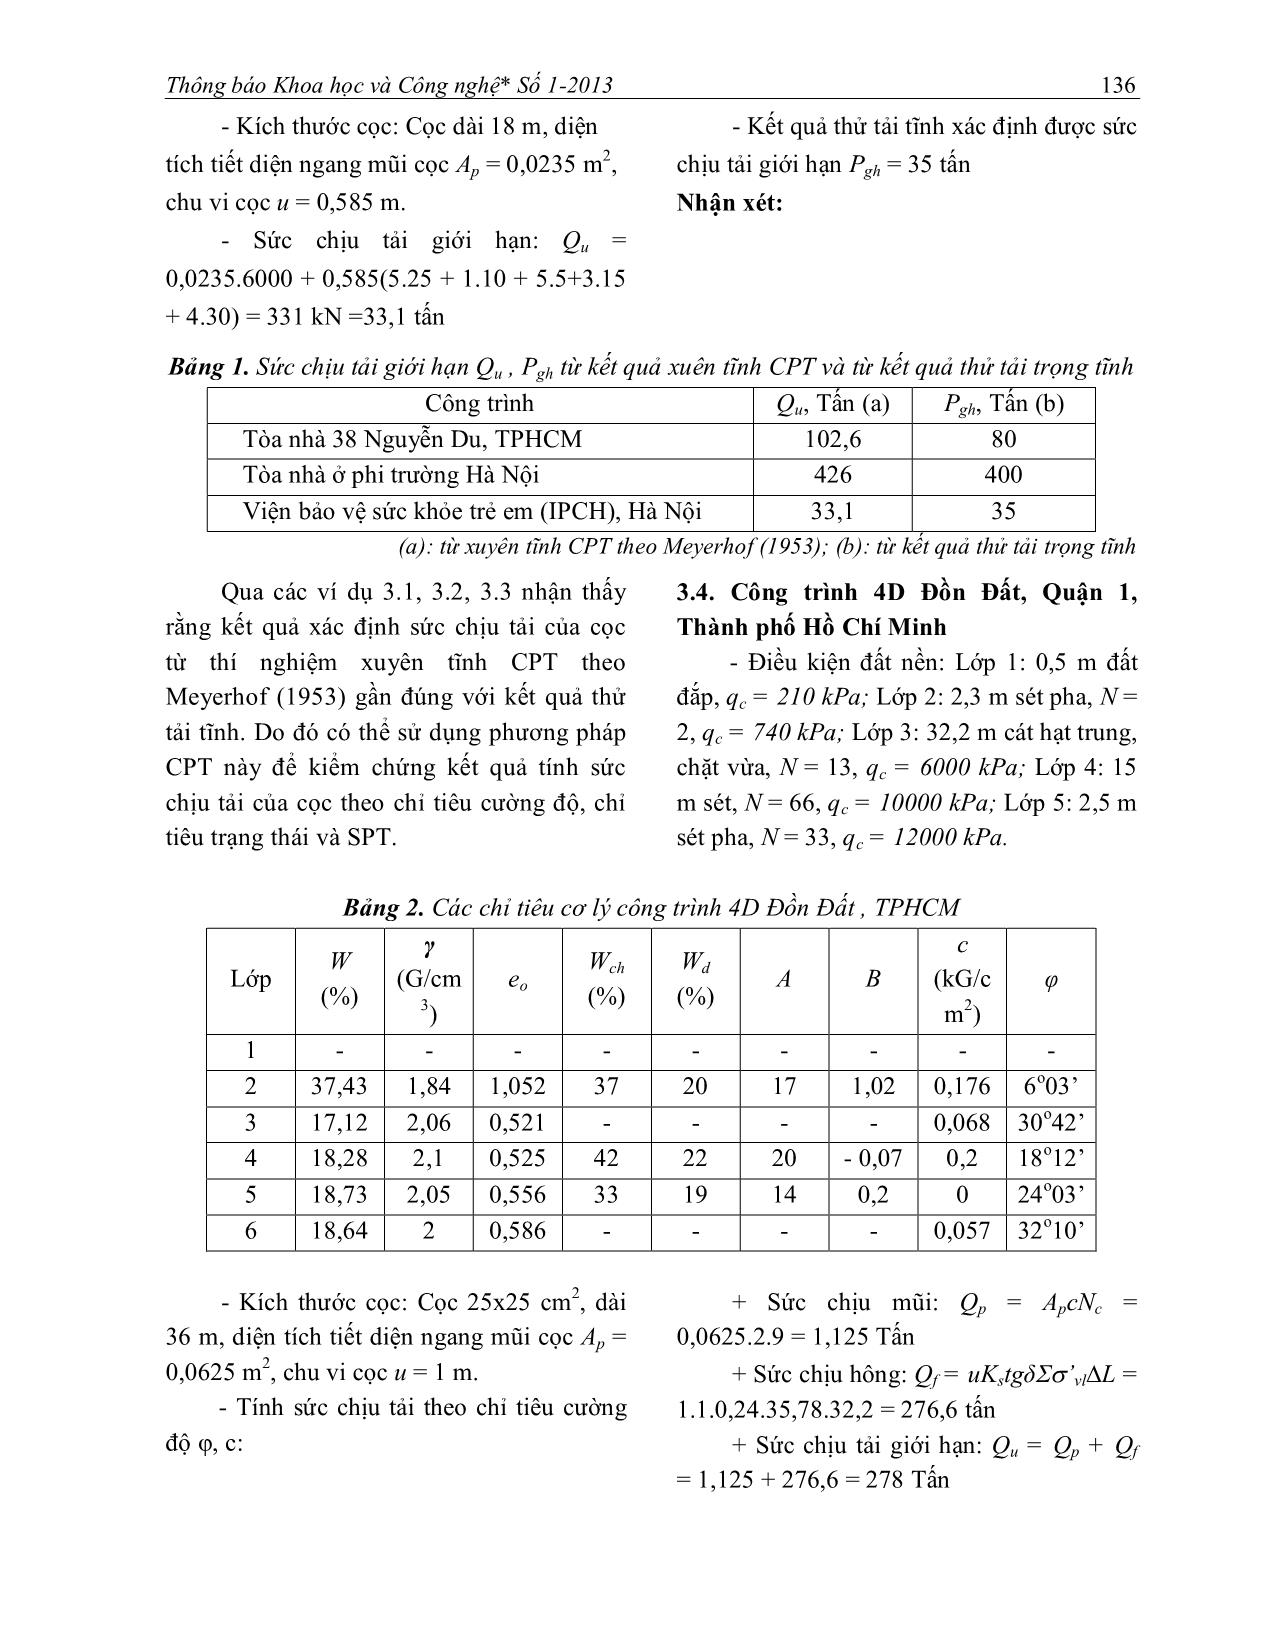 So sánh các phương pháp xác định sức chịu tải của cọc trang 5